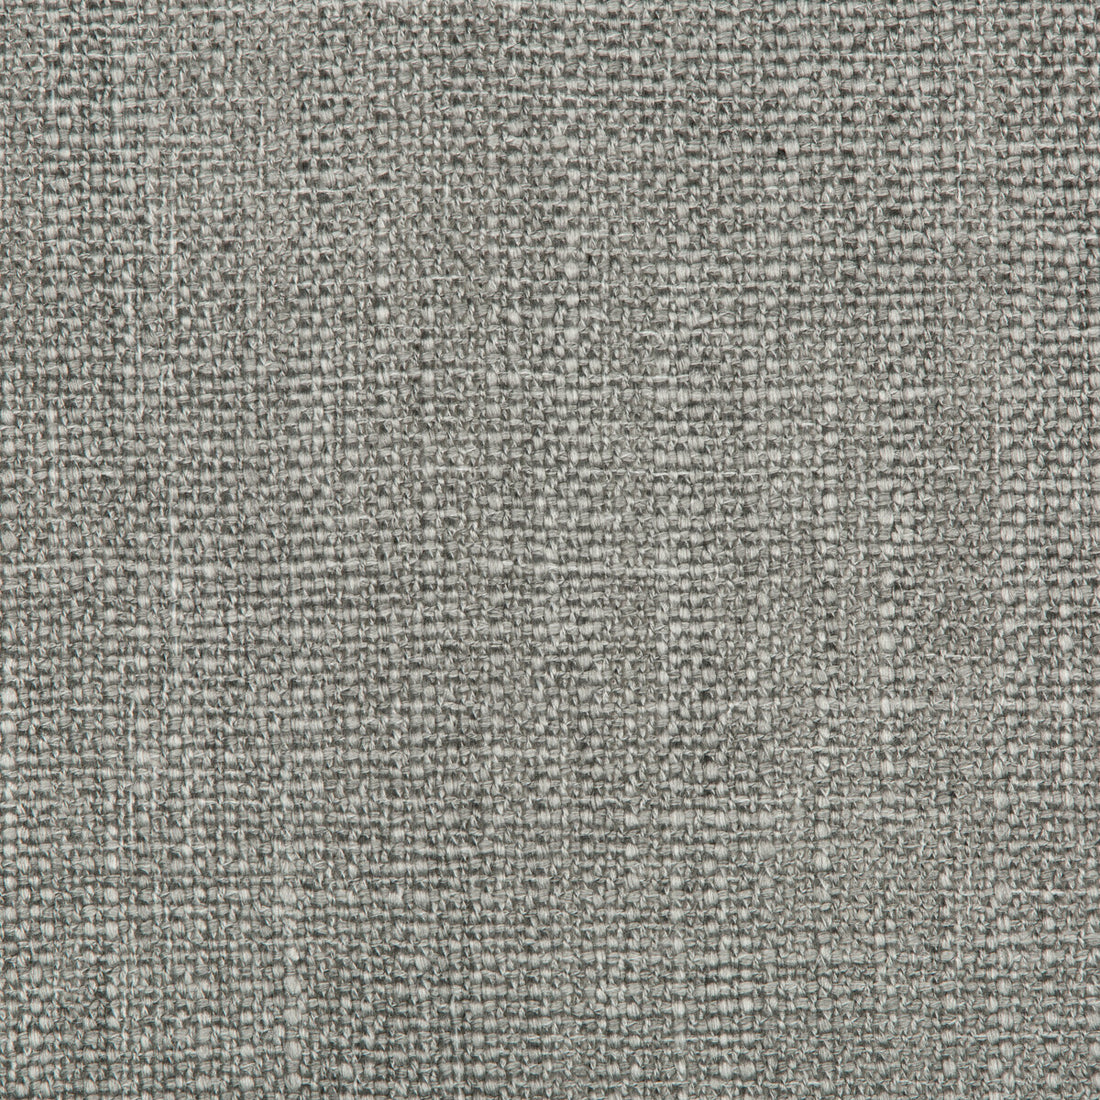 Kravet Design fabric in 4586-11 color - pattern 4586.11.0 - by Kravet Design